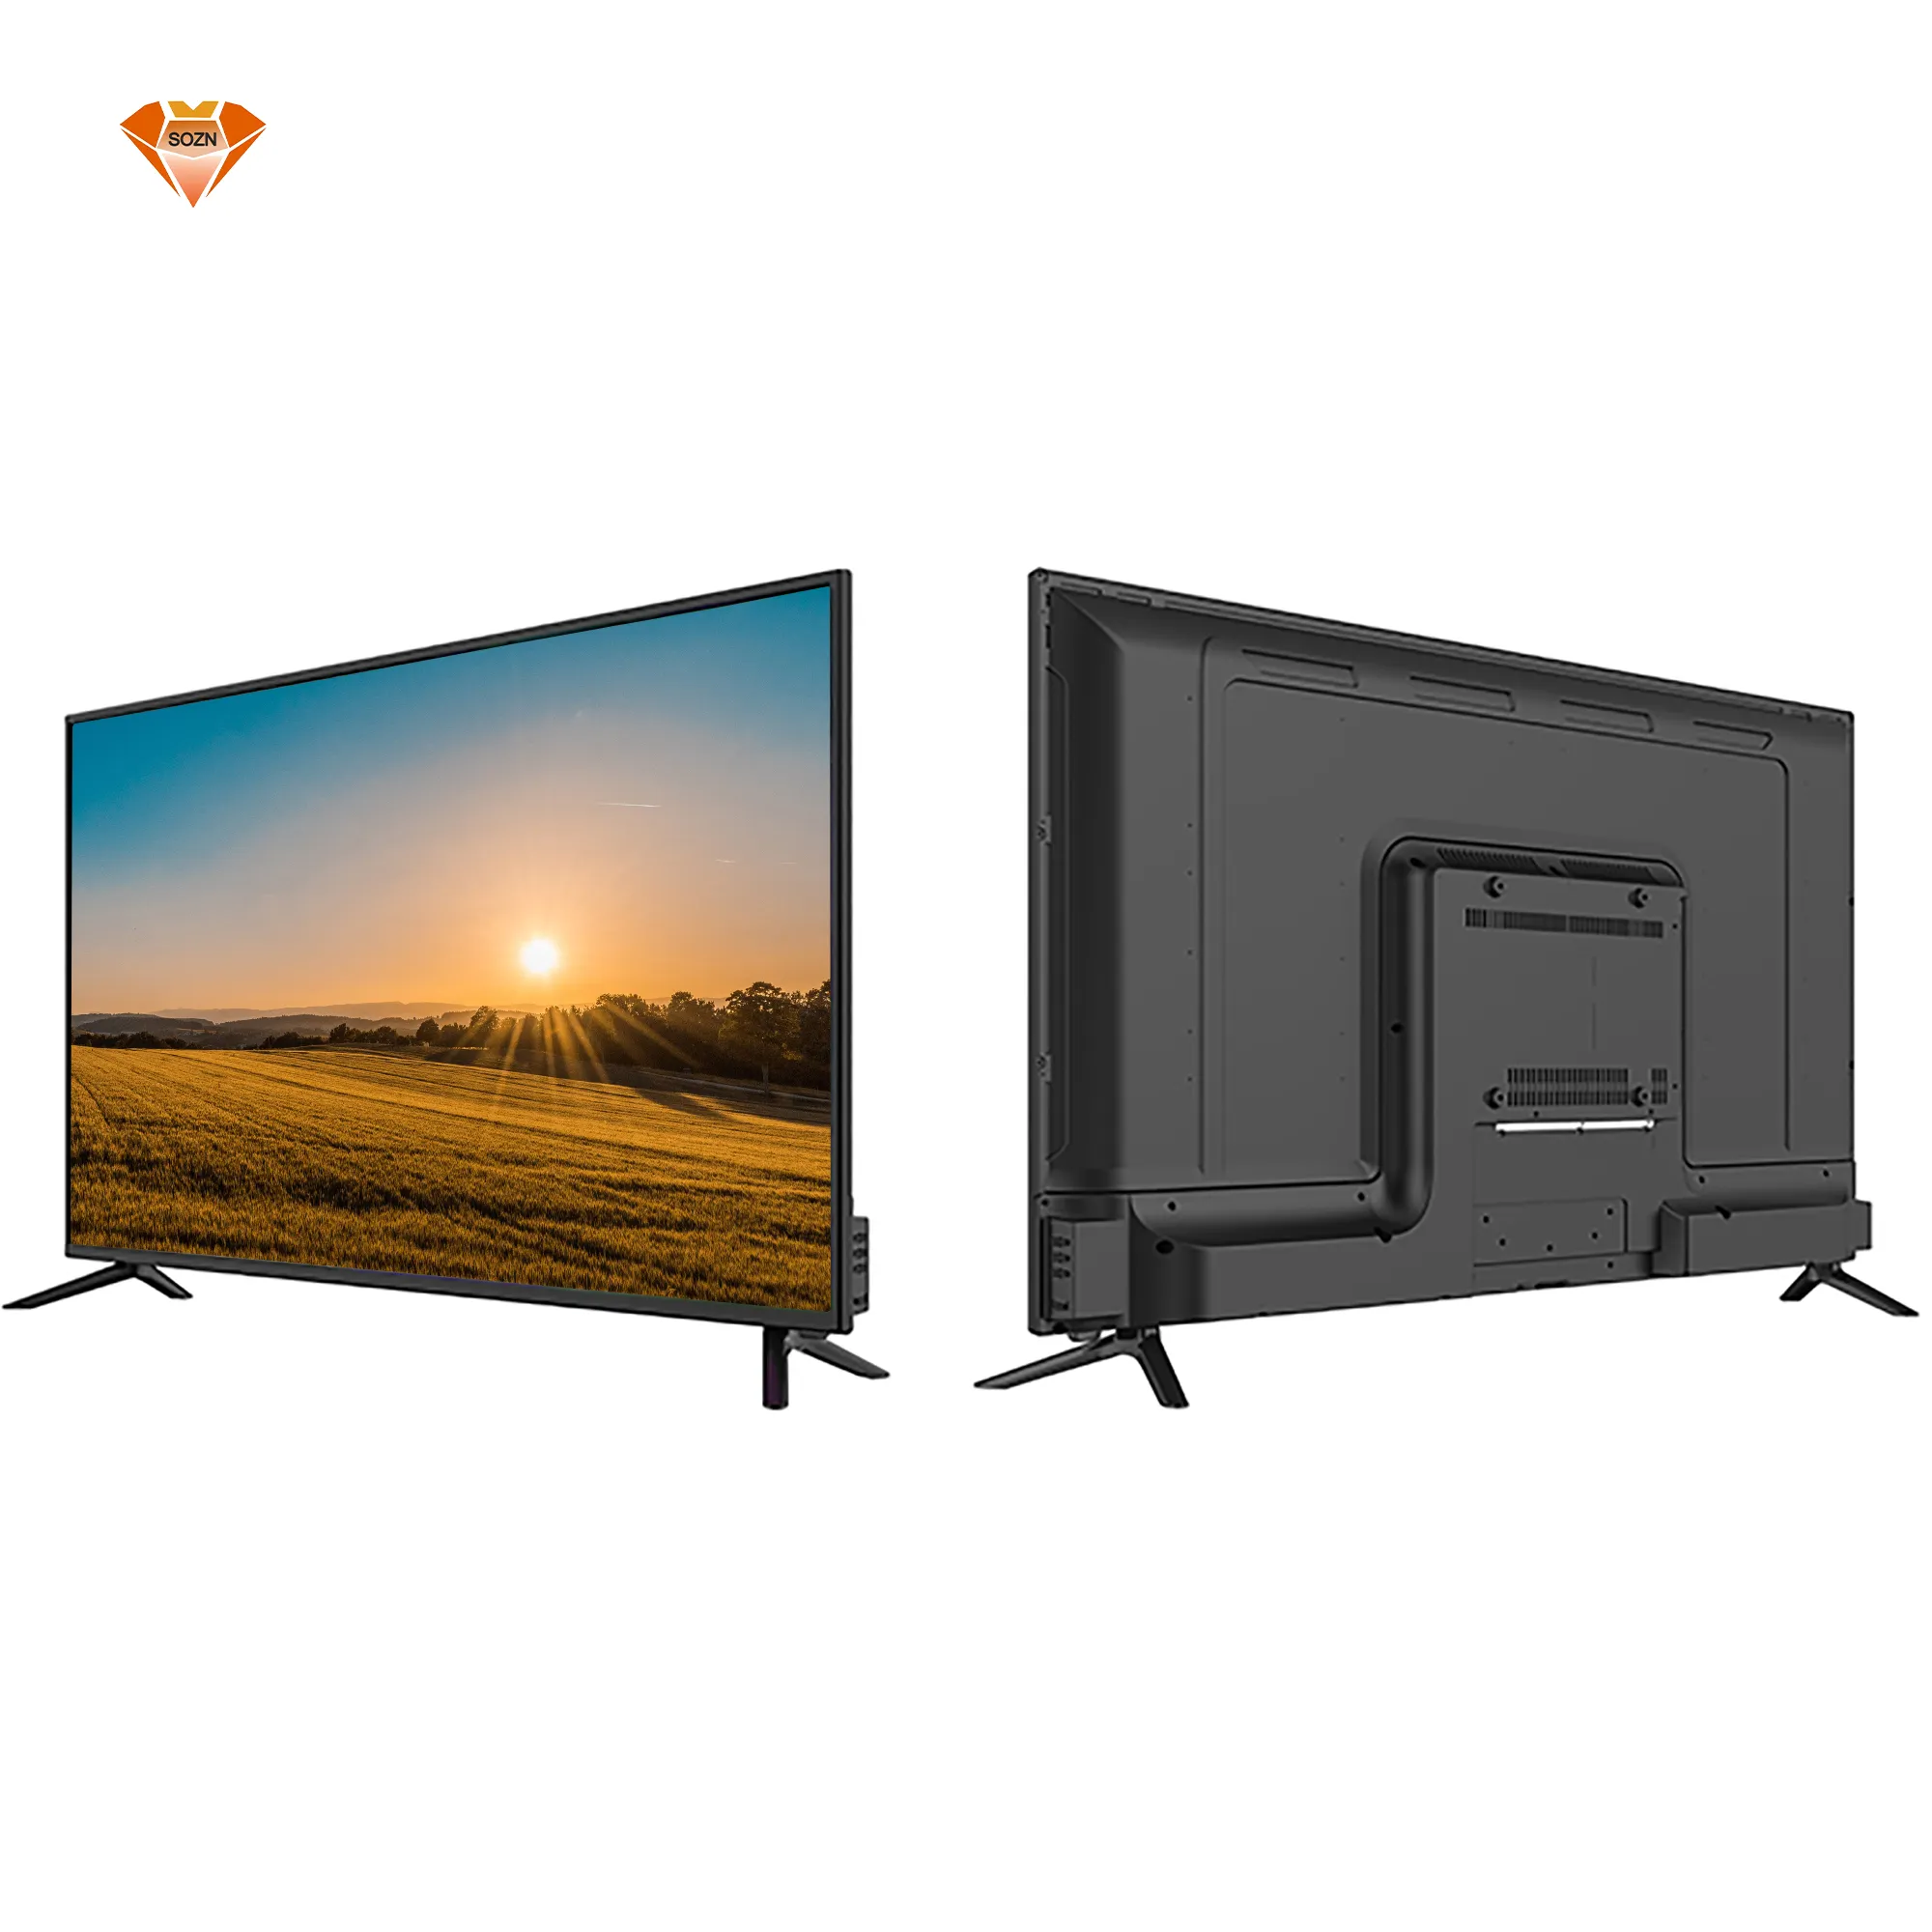 신제품 프로모션 55 인치 스마트 tv 4k u ltra hd 디지털 안드로이드 기능 스마트 tv 55 인치 저렴한 가격 판매